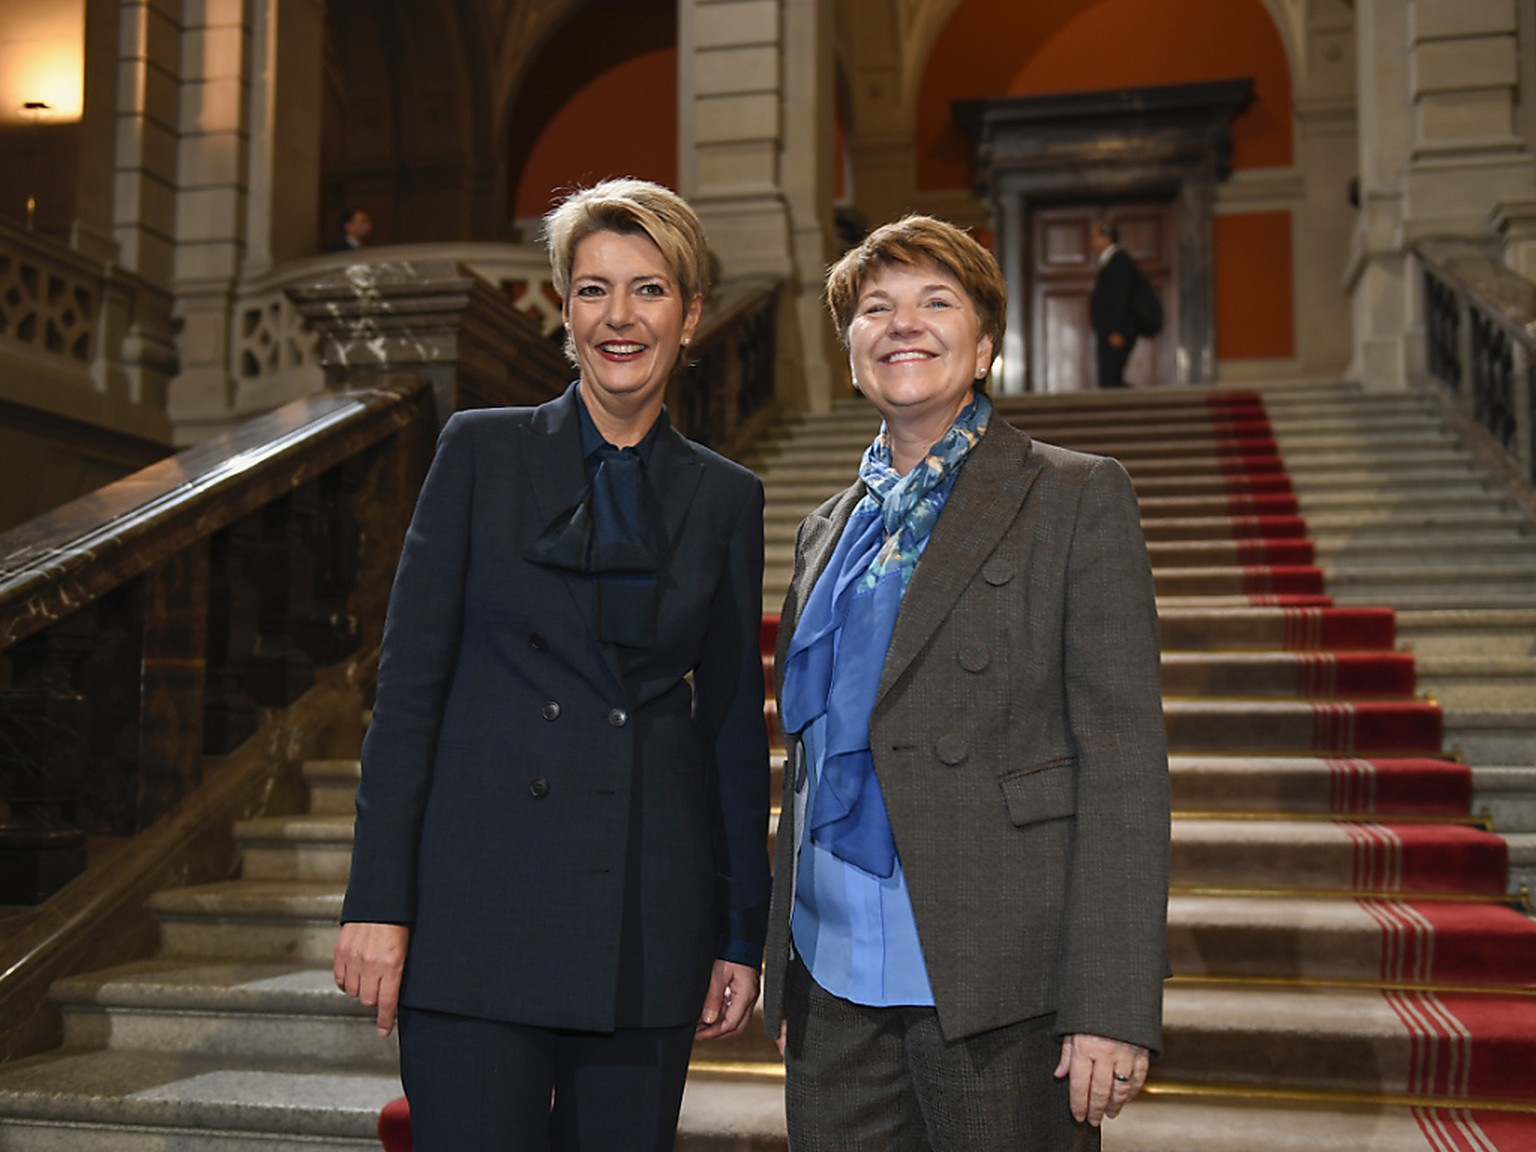 Erhalten Bestnoten von der Bevölkerung: die Bundesrätinnen Karin Keller-Sutter (links) und Viola Amherd nach ihrer Wahl im vergangenen Dezember.